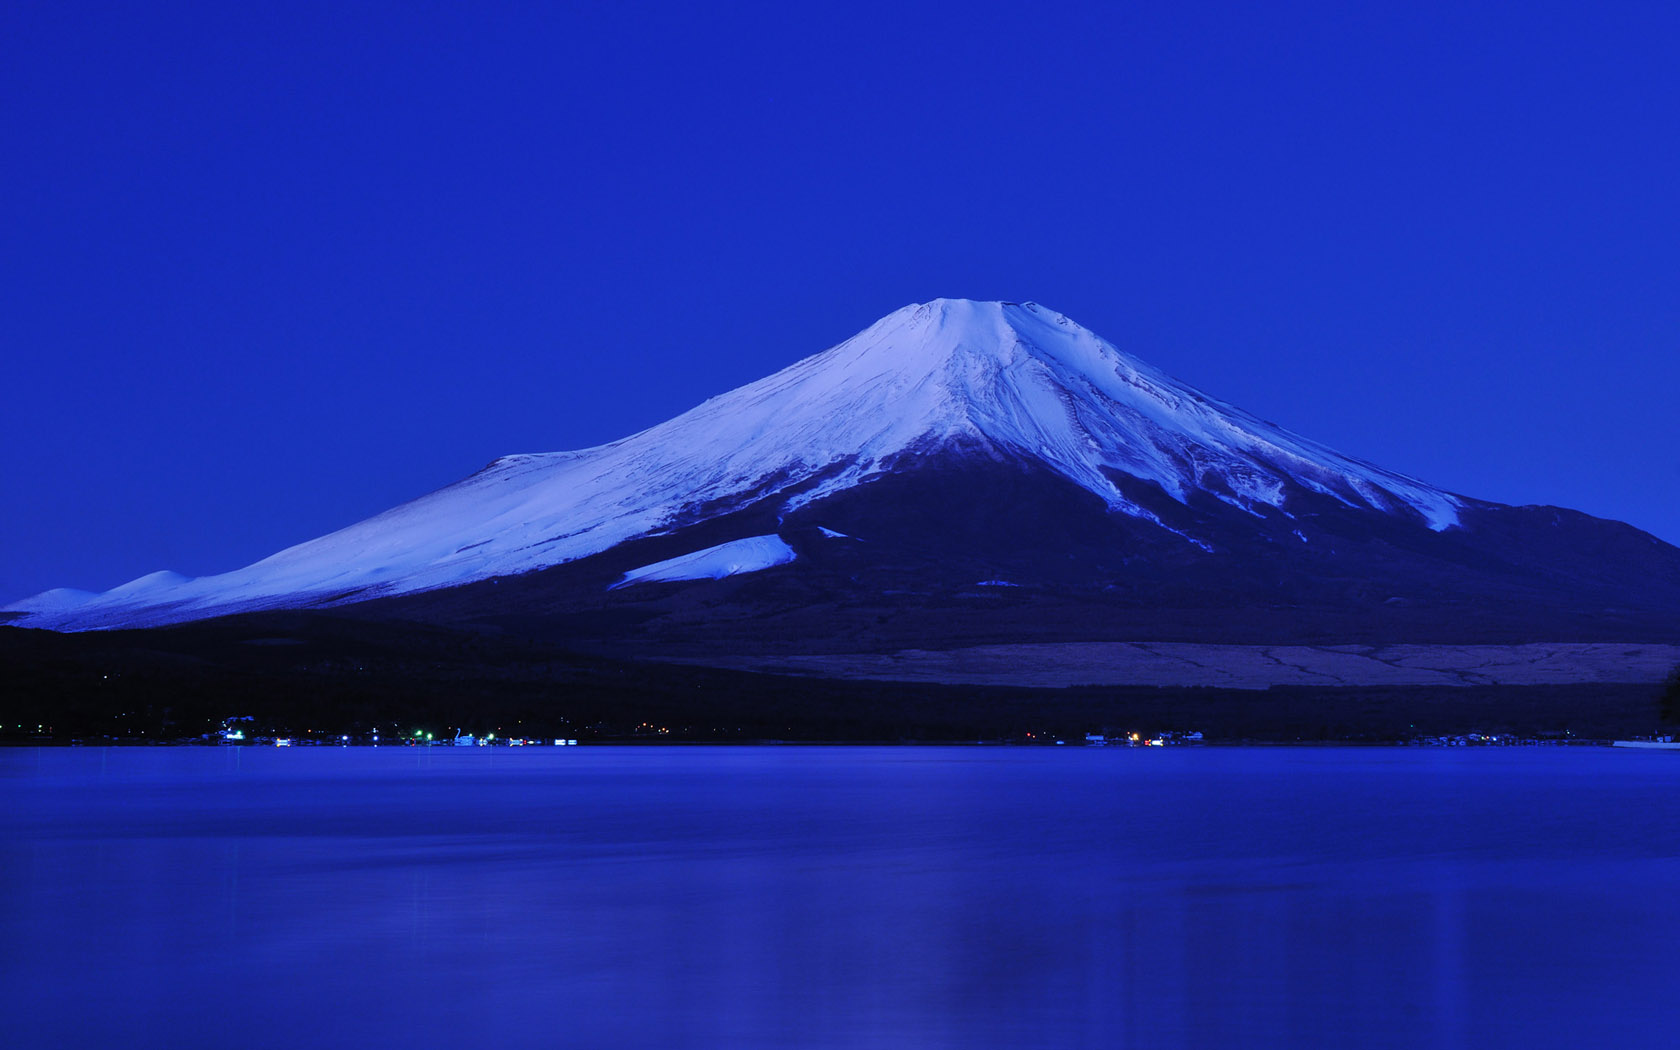 冬天富士山风景壁纸 风景壁纸 壁纸下载 彼岸桌面